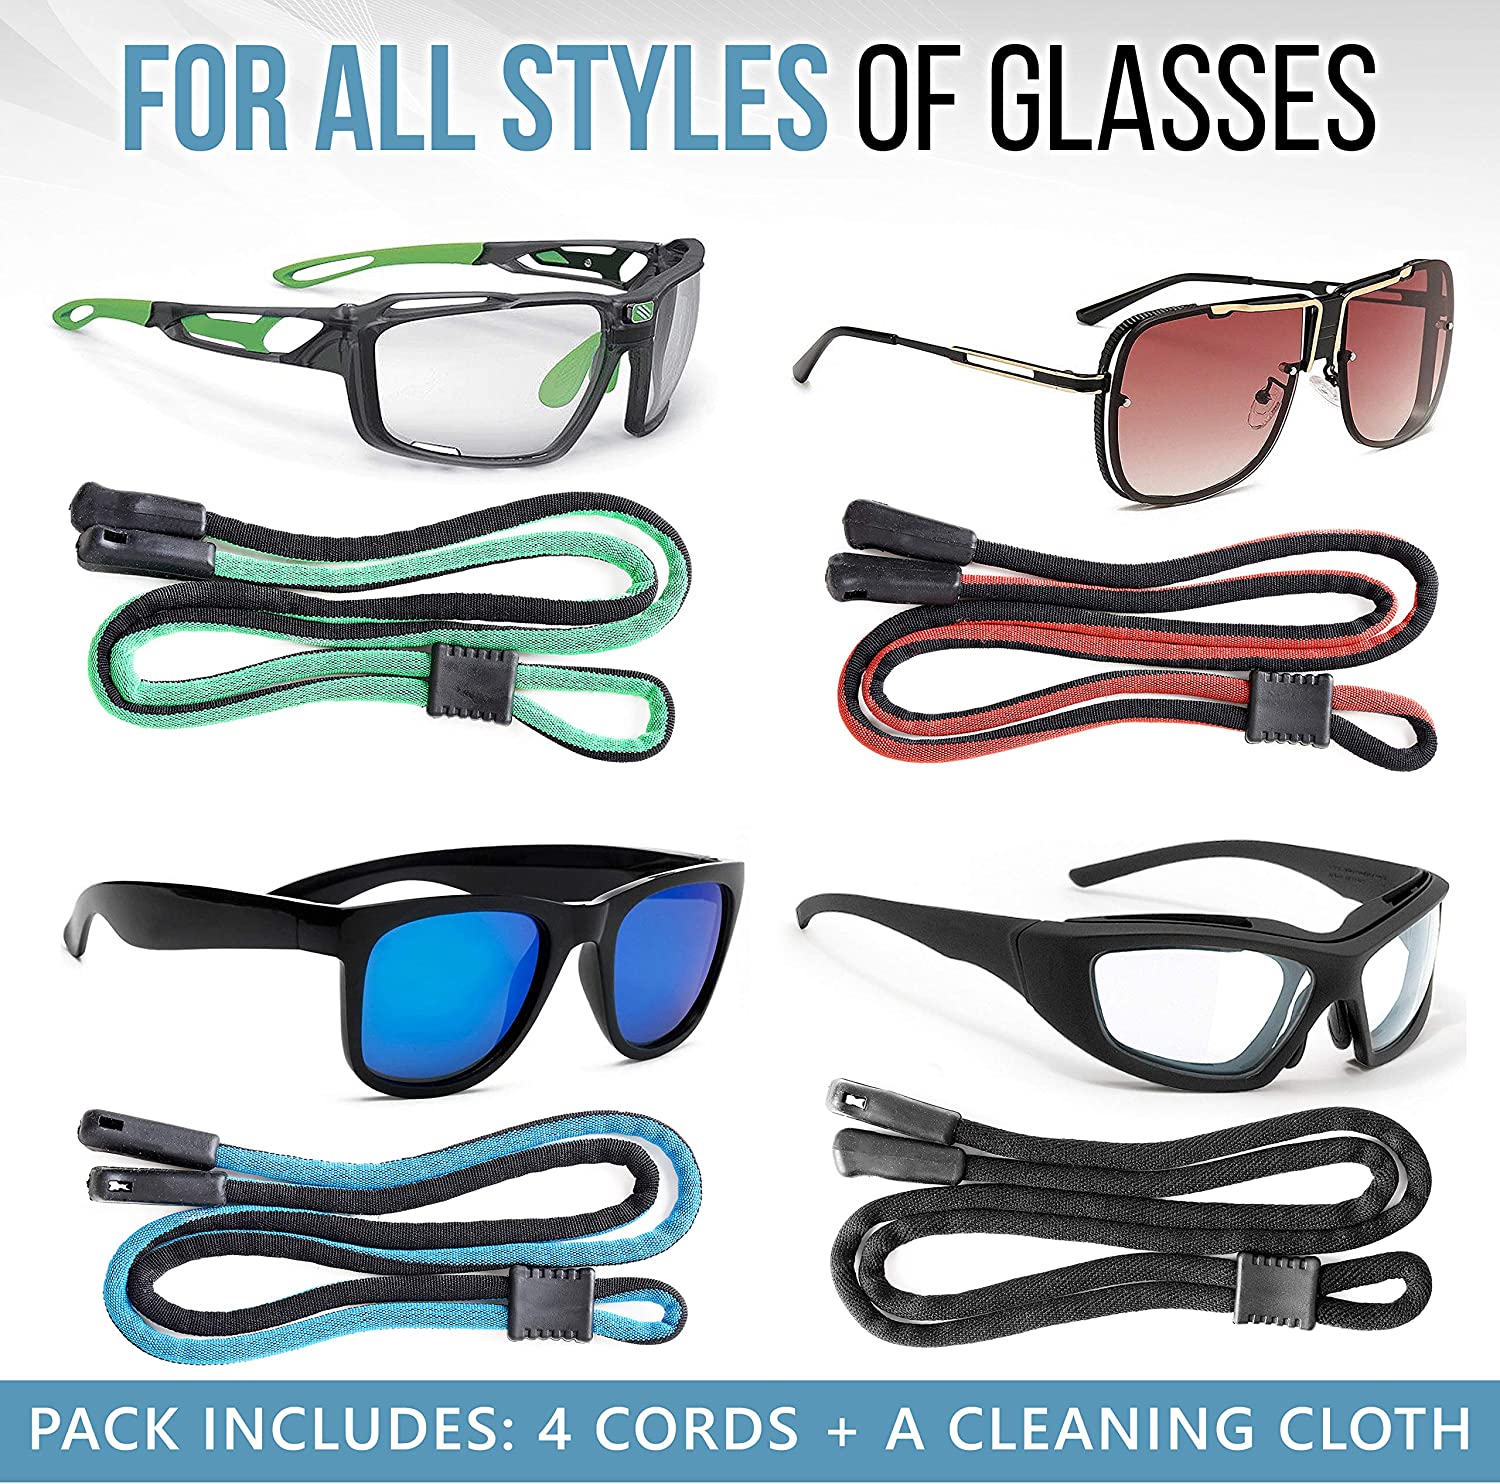 SiGonna - Premium Accessories for your Eyeglasses & Sunglasses